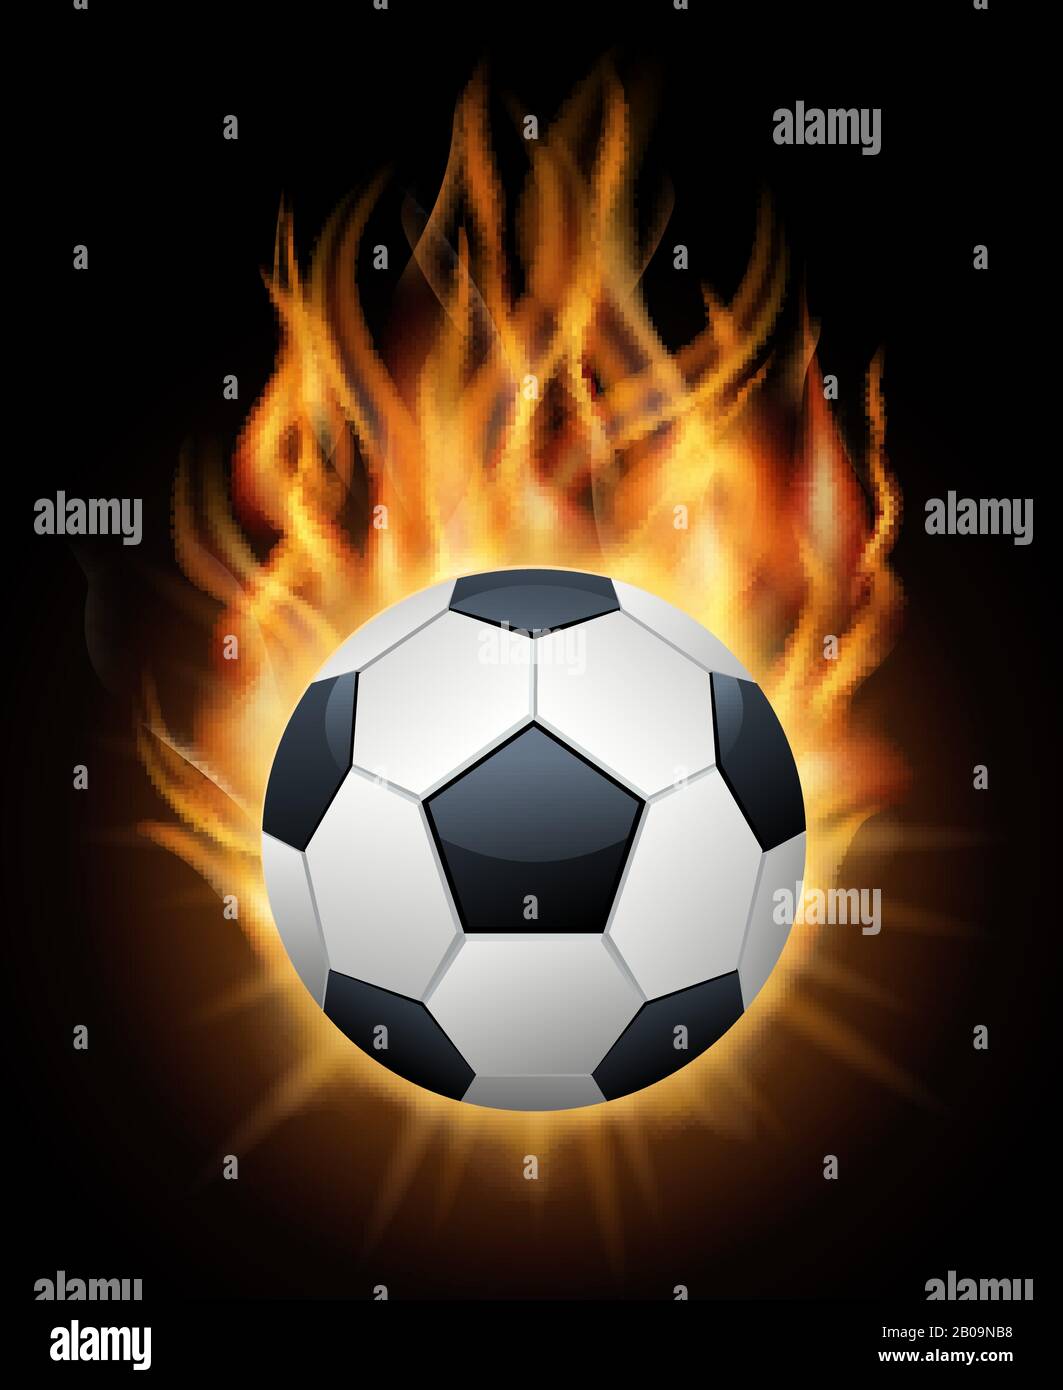 Realistischer brennender Fußballball isoliert schwarzer Vektor. Sport Fußball-Ballerillustration Stock Vektor